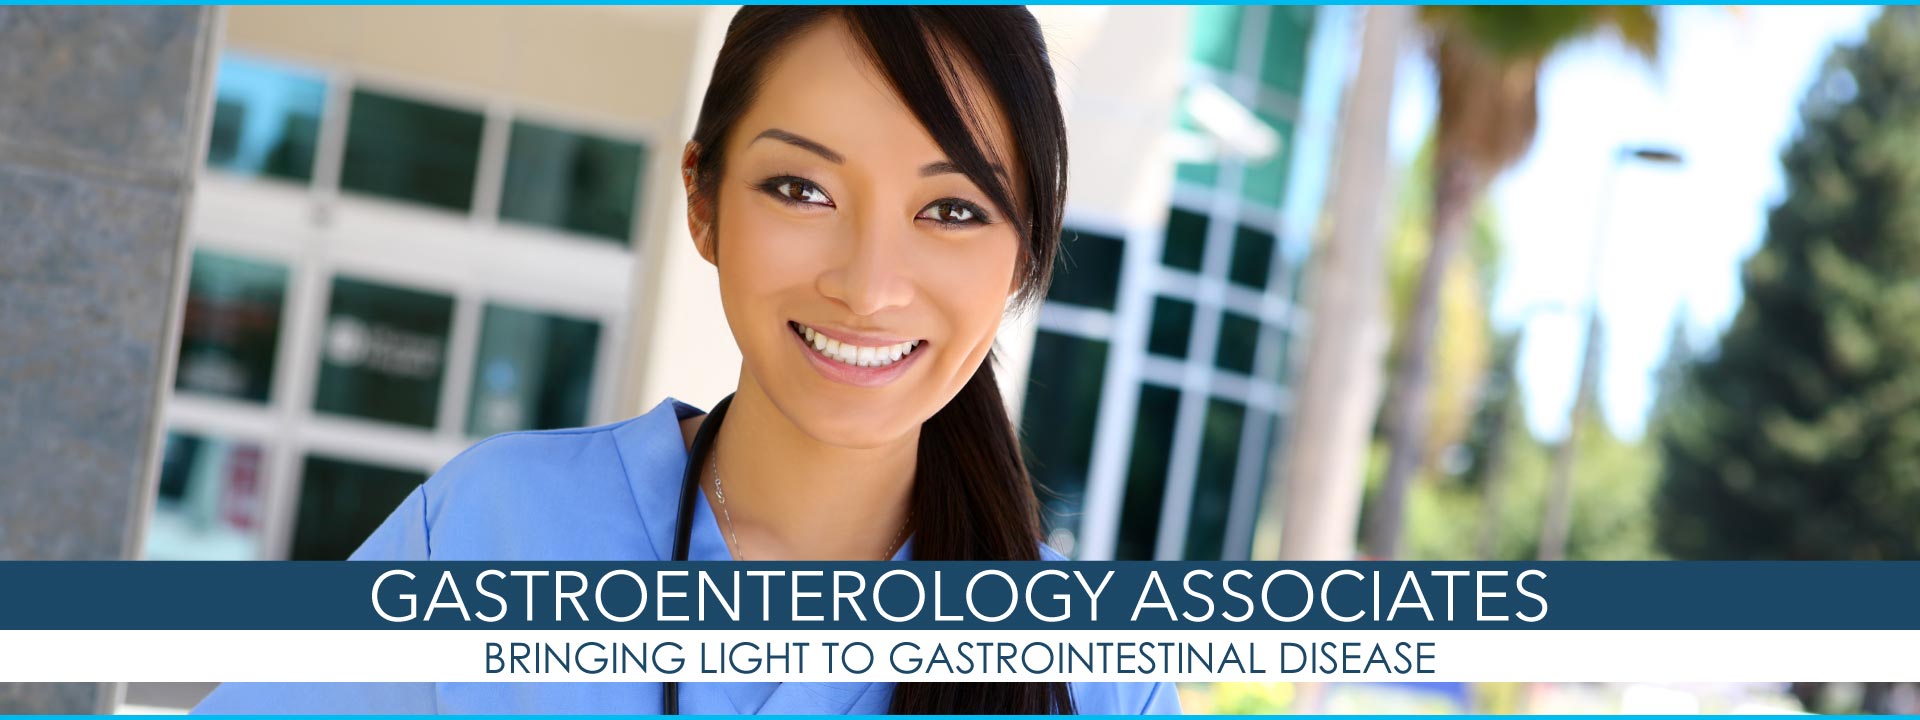 Gastroenterology Associates Banner - Hilo, Hawaii